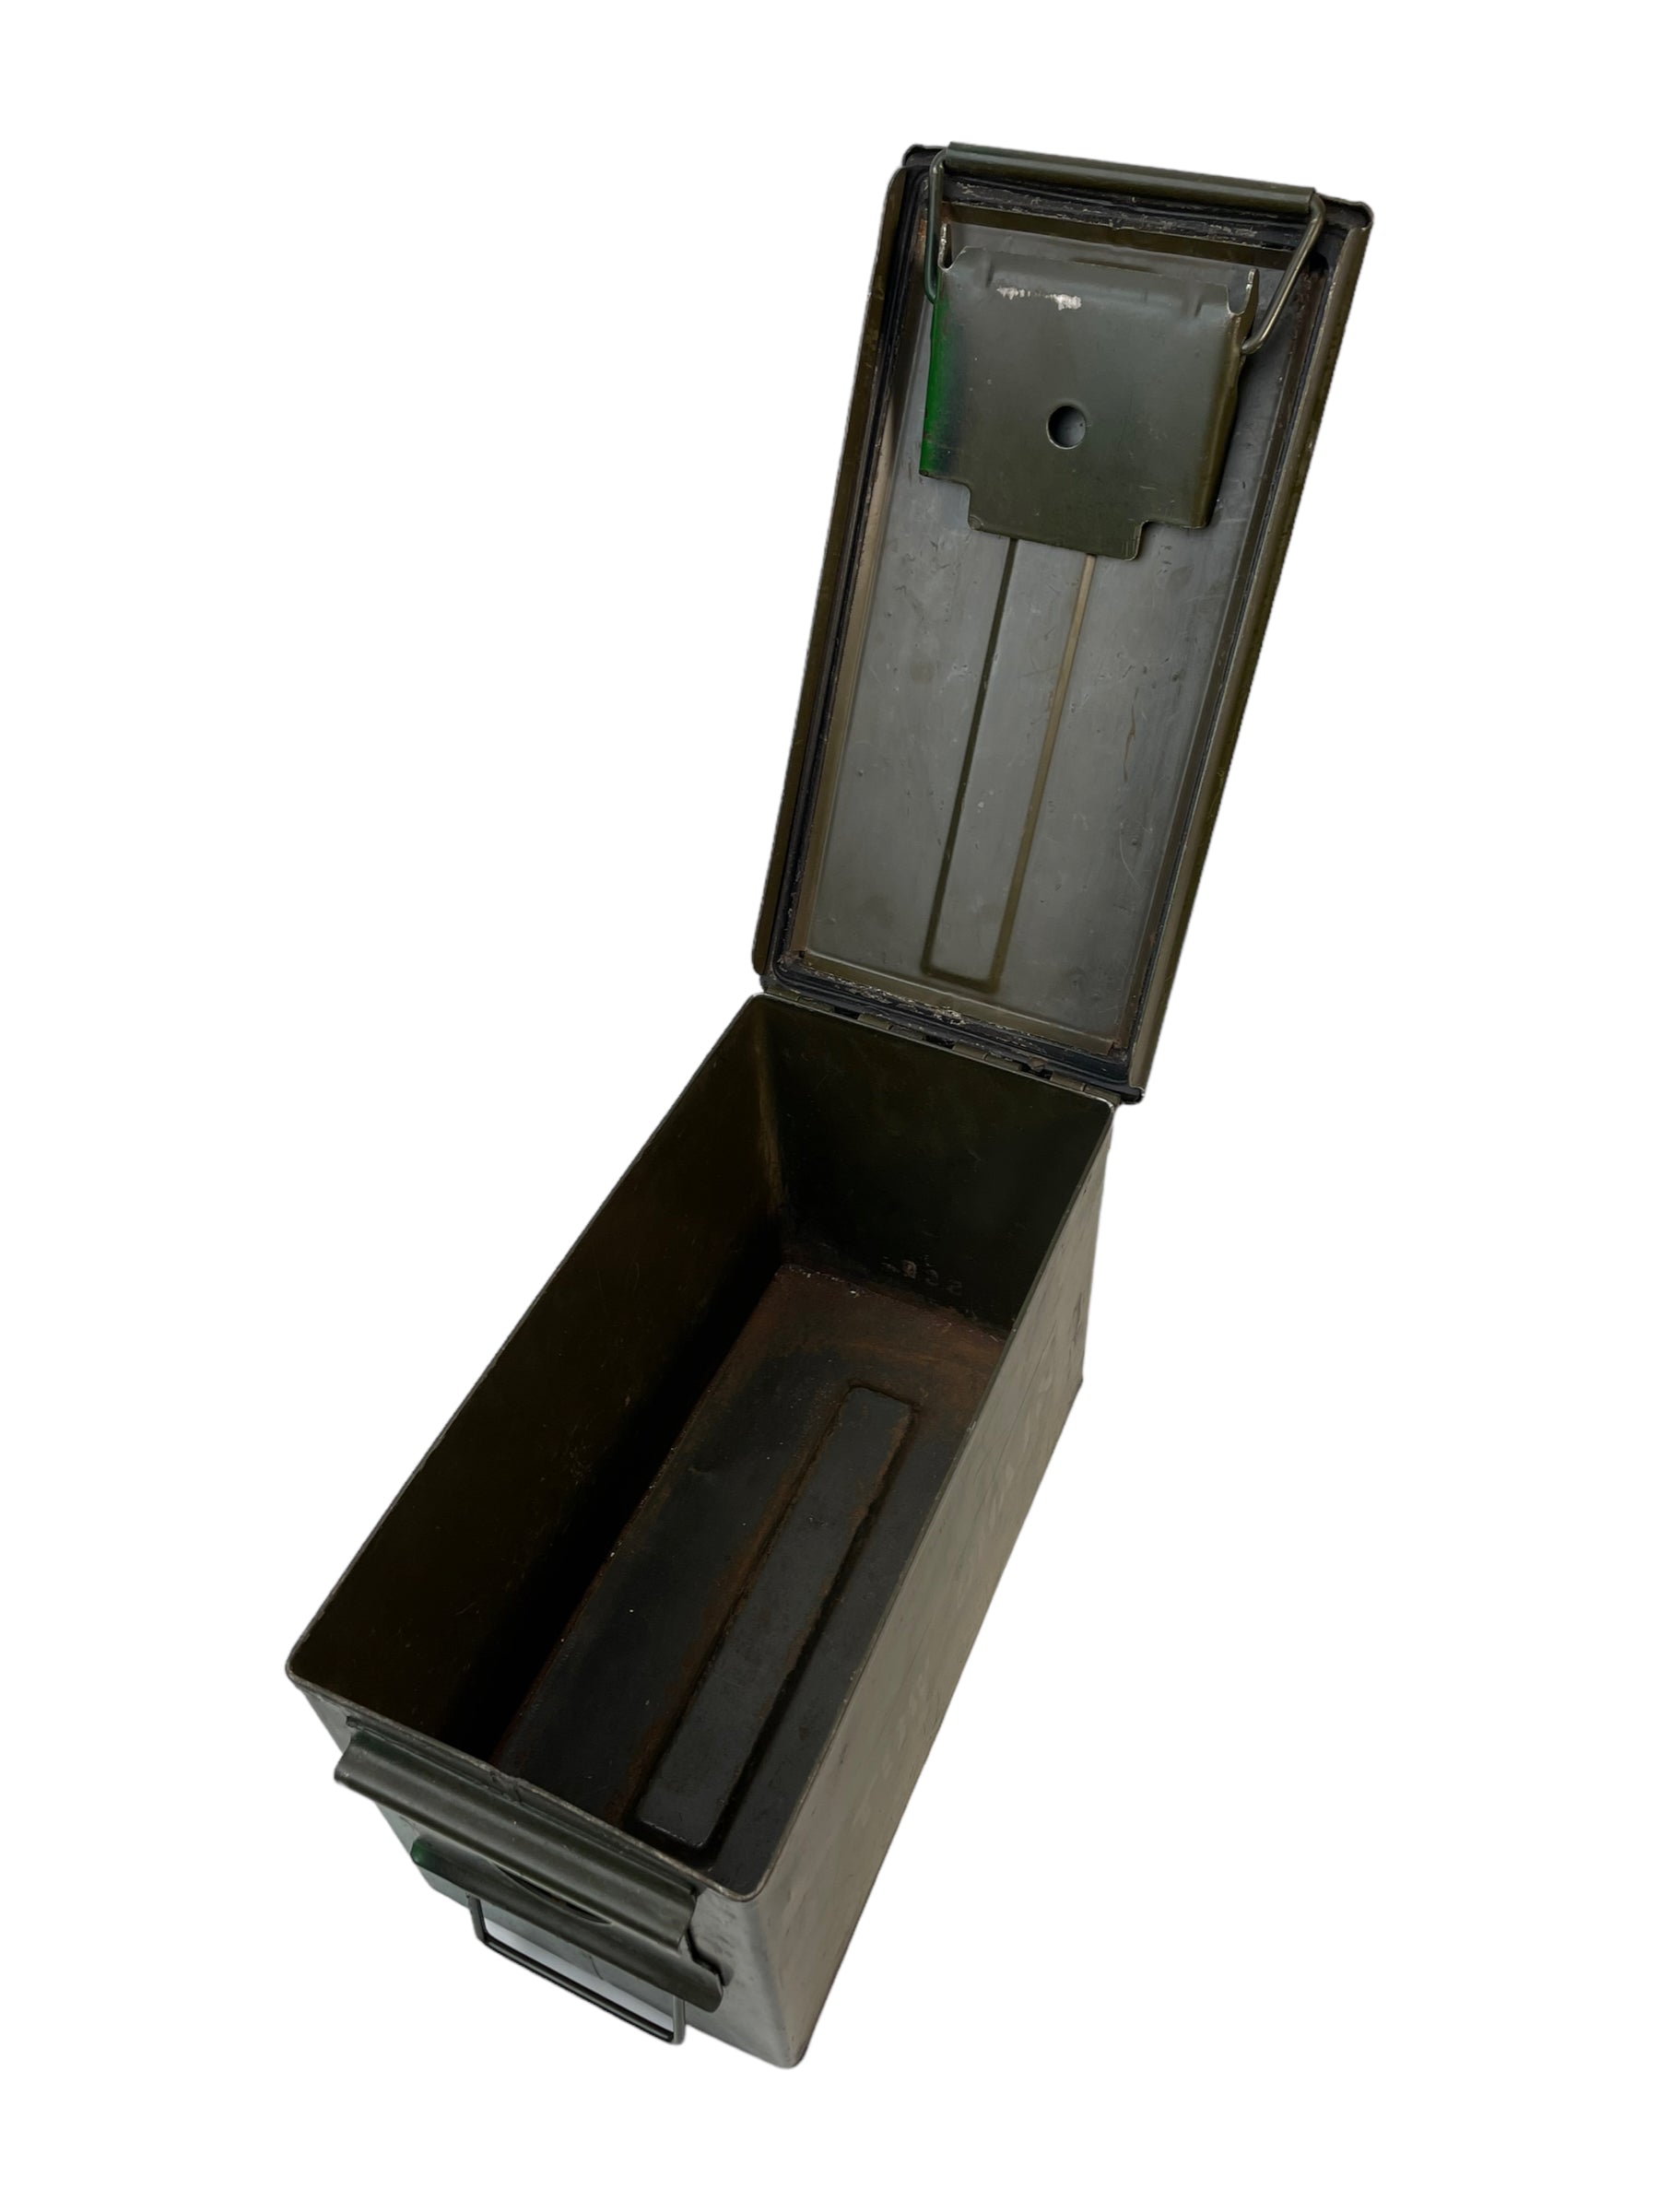 Vintage Army Ammo Box